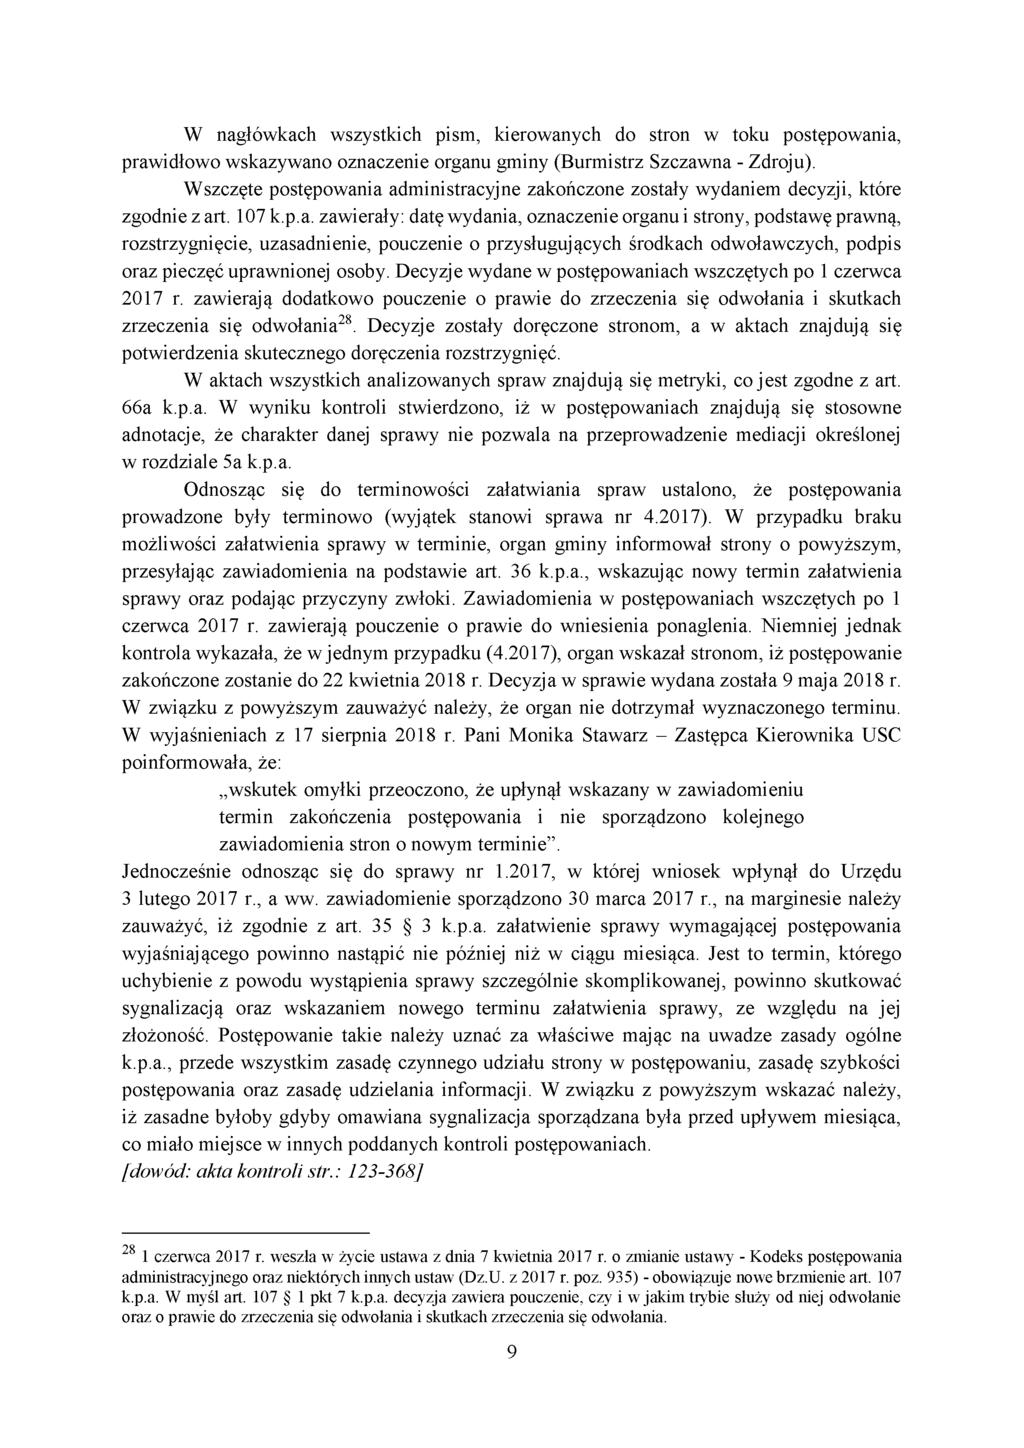 W nagłówkach wszystkich pism, kierowanych do stron w toku postępowania, prawidłowo wskazywano oznaczenie organu gminy (Burmistrz Szczawna - Zdroju).